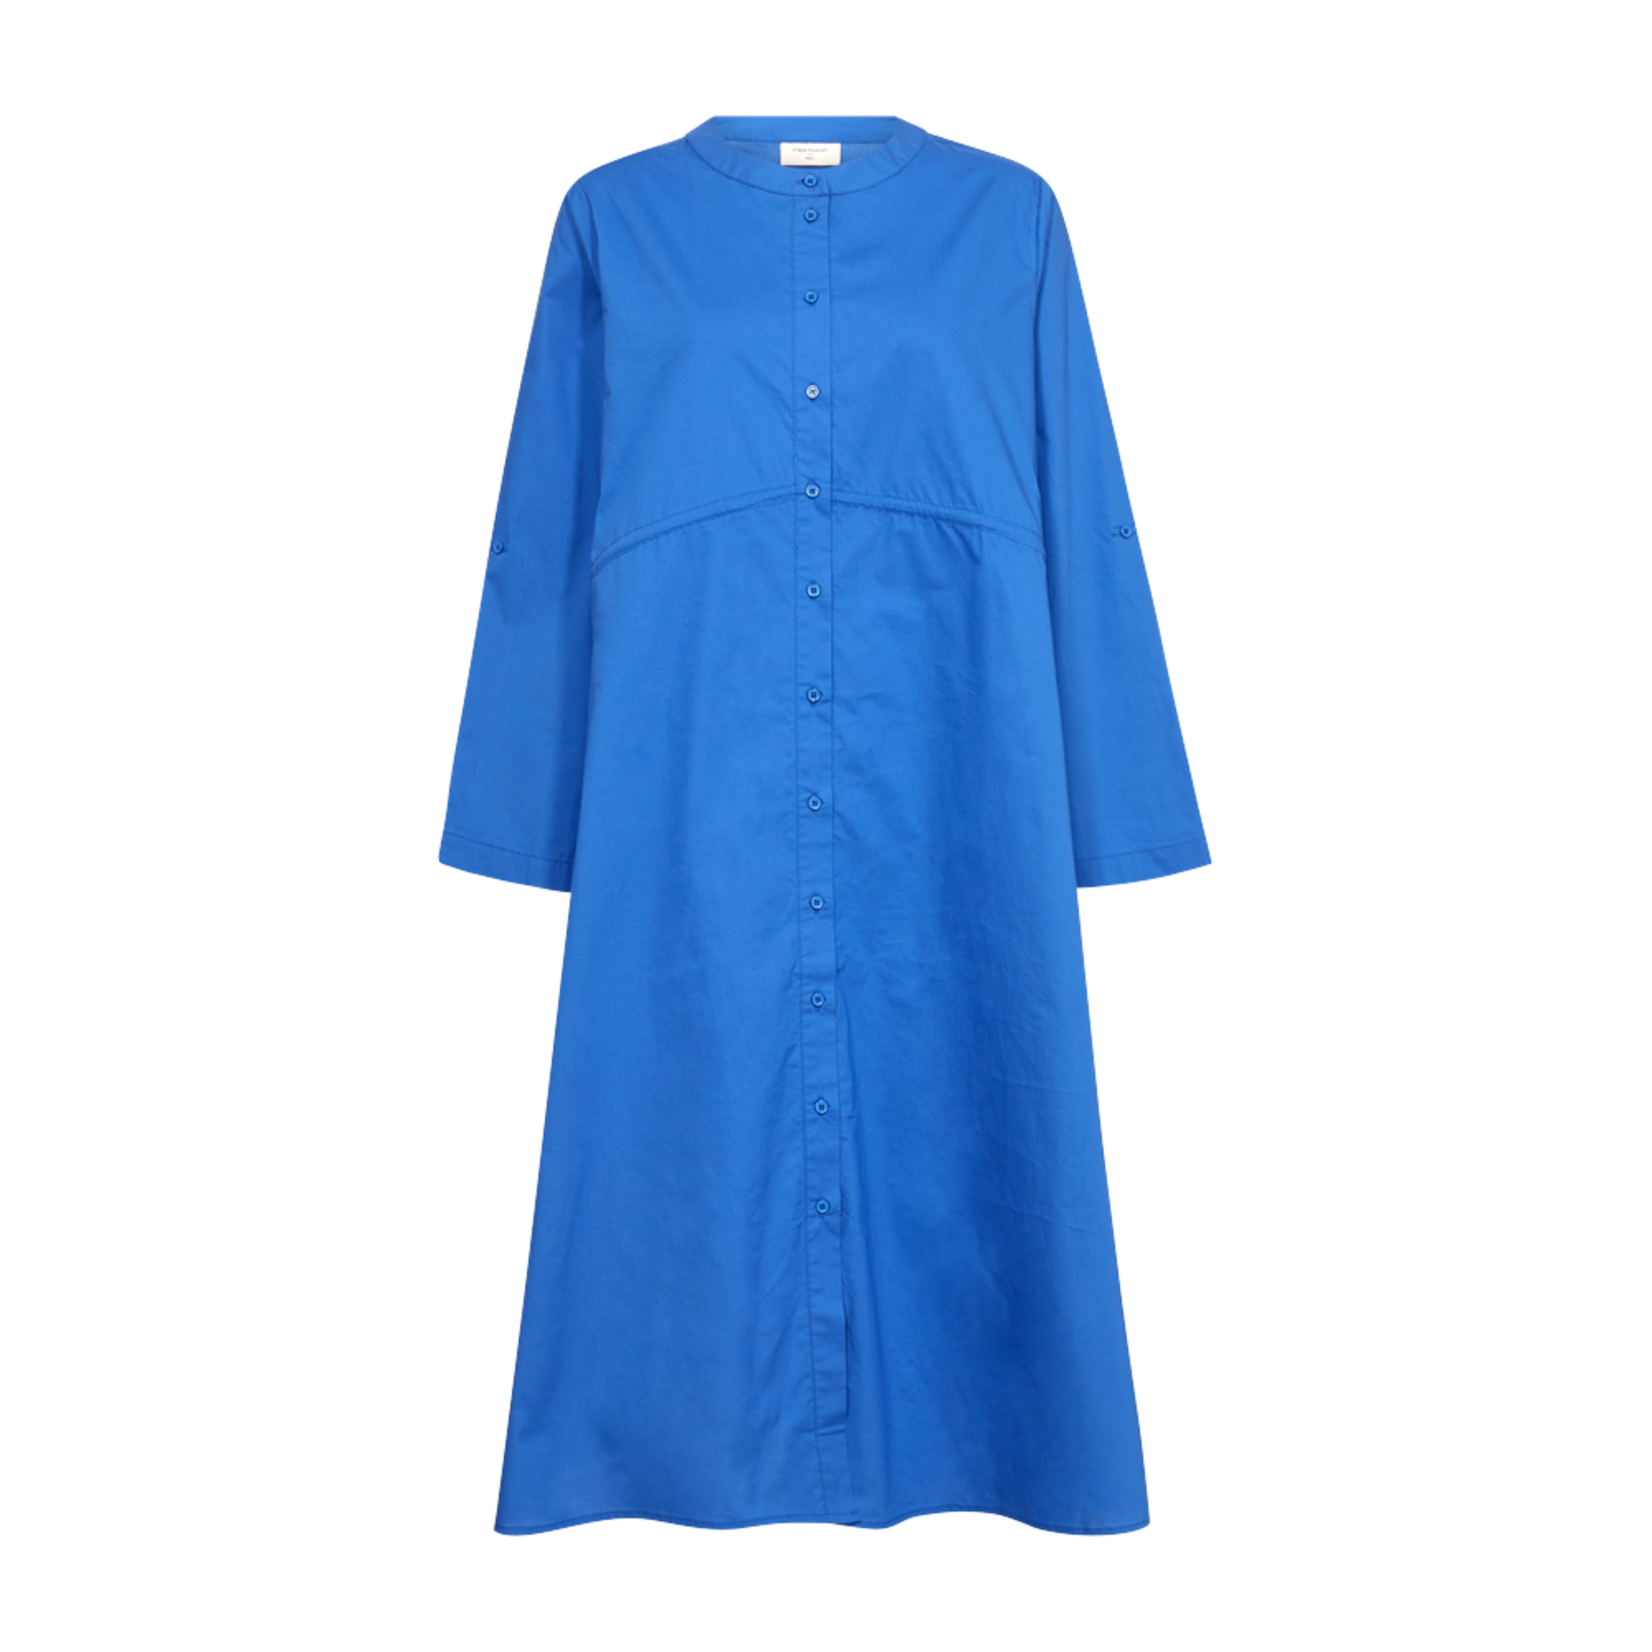 Free/quent Deze katoenen jurk zal je doen stralen - in dat prachtig blauw